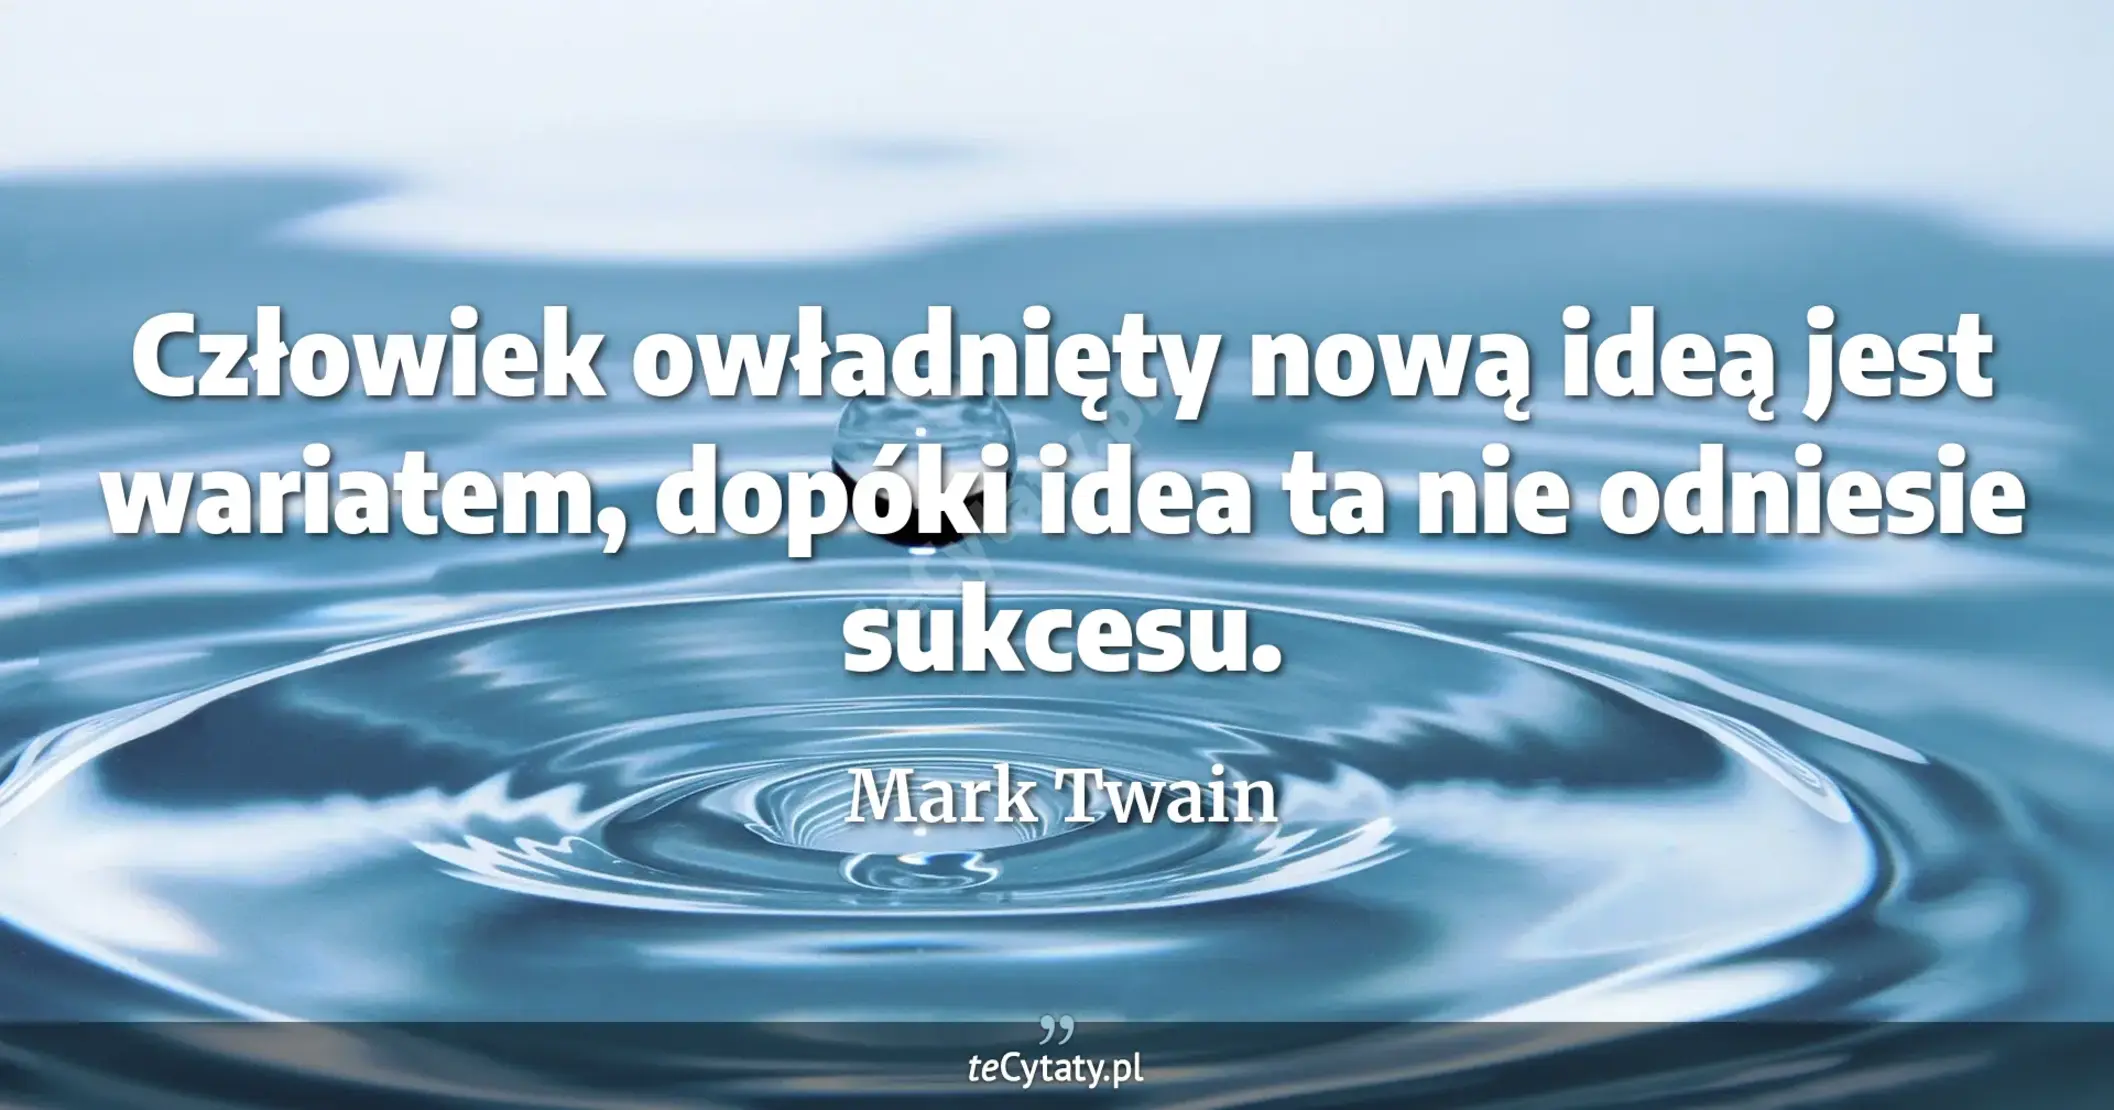 Człowiek owładnięty nową ideą jest wariatem, dopóki idea ta nie odniesie sukcesu. - Mark Twain